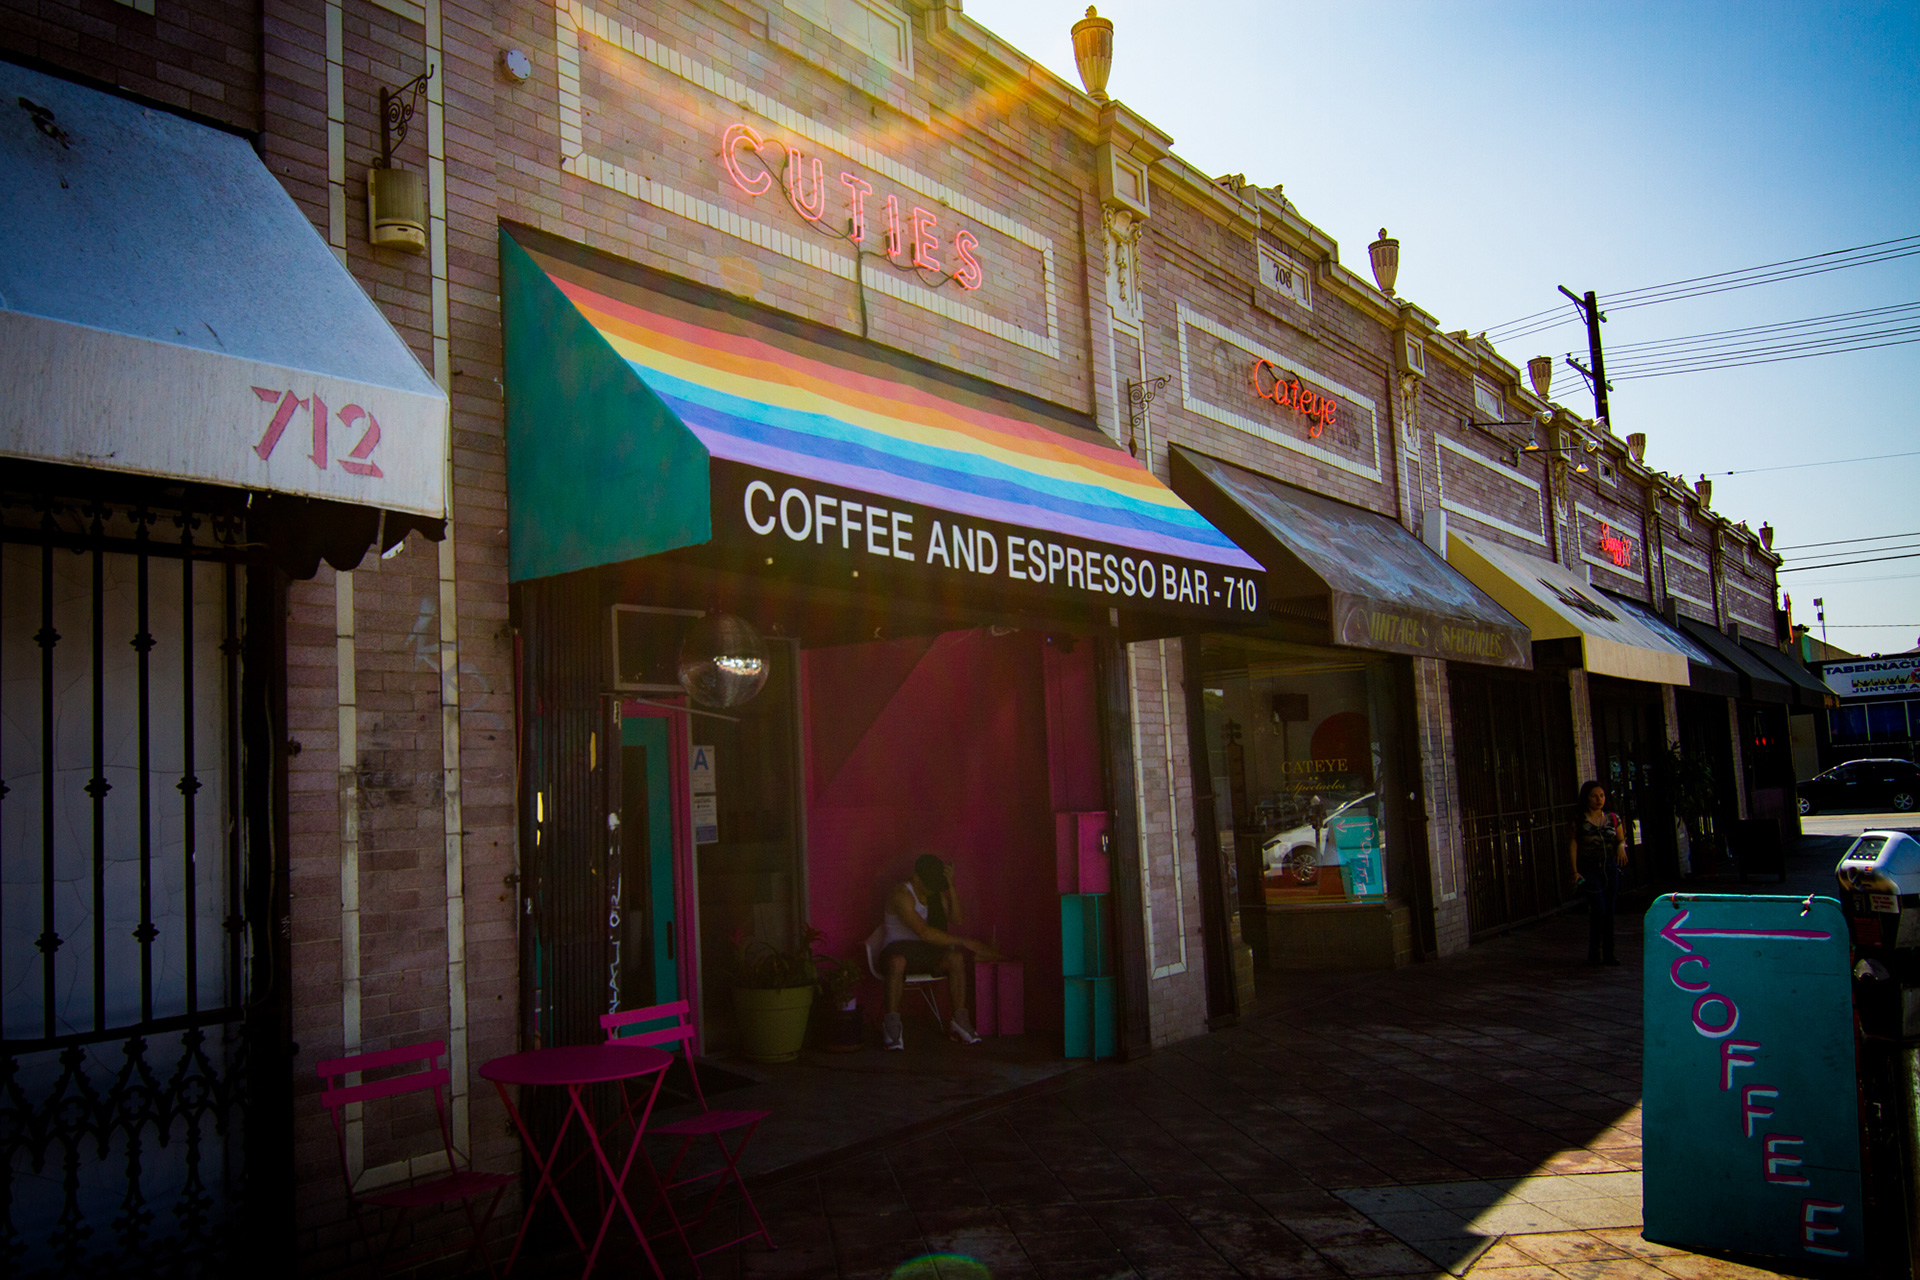 queer coffeehouses rj joseph